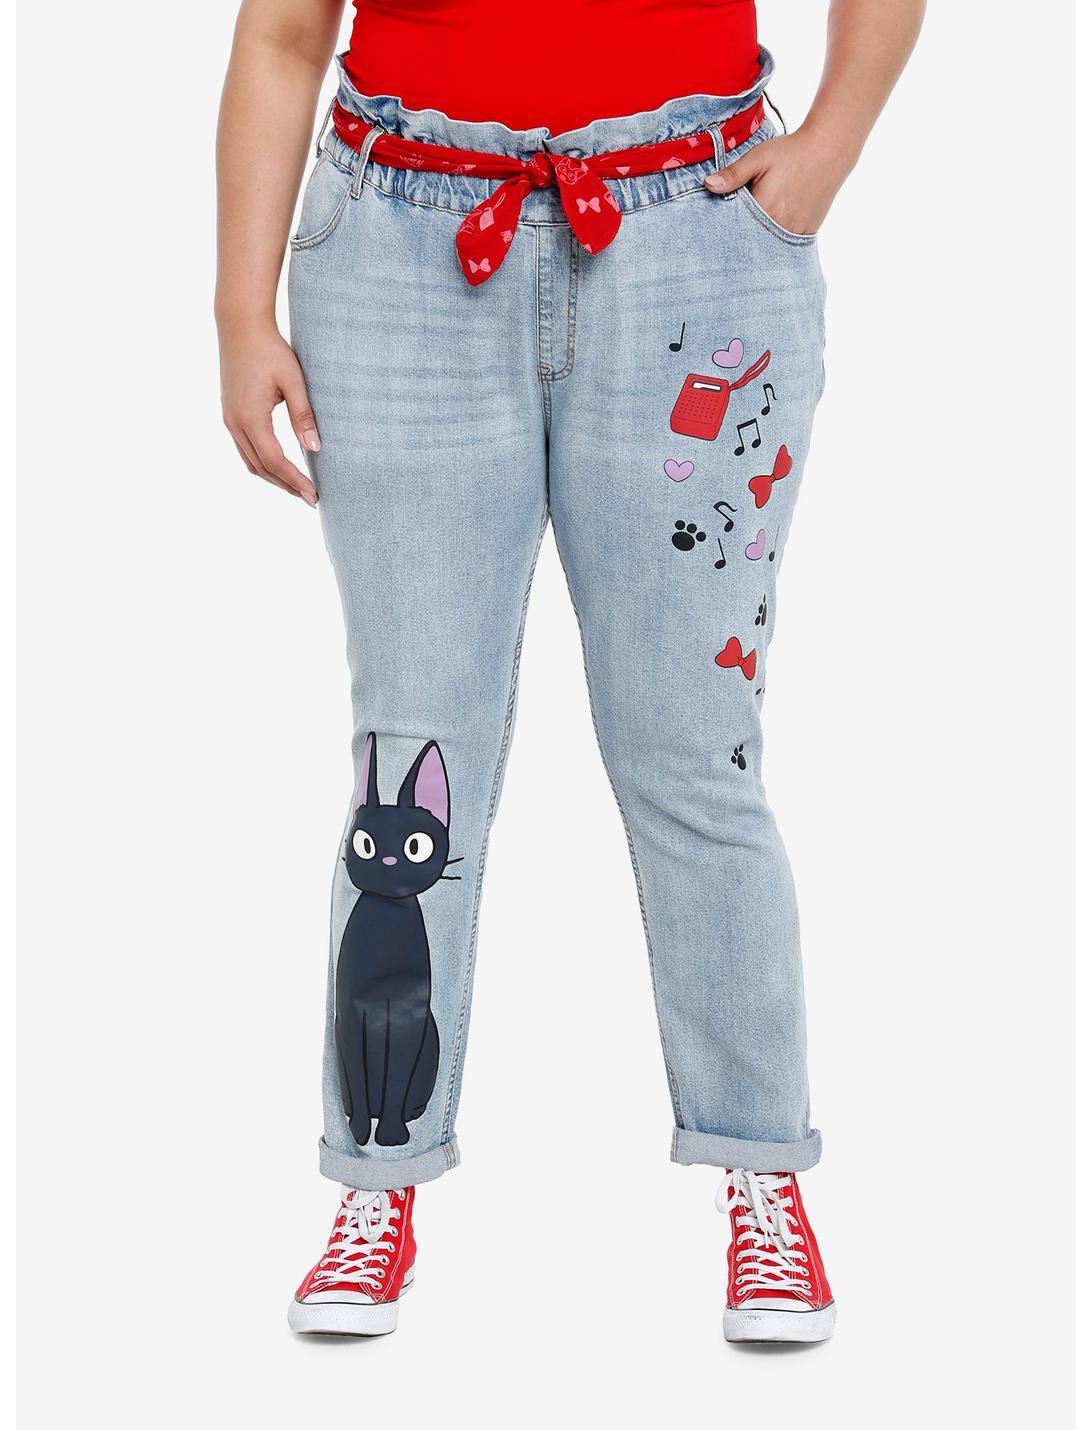 Her Universe Studio Ghibli Kiki's Delivery Service Jiji Paperbag Jeans Plus Size, MULTI, hi-res